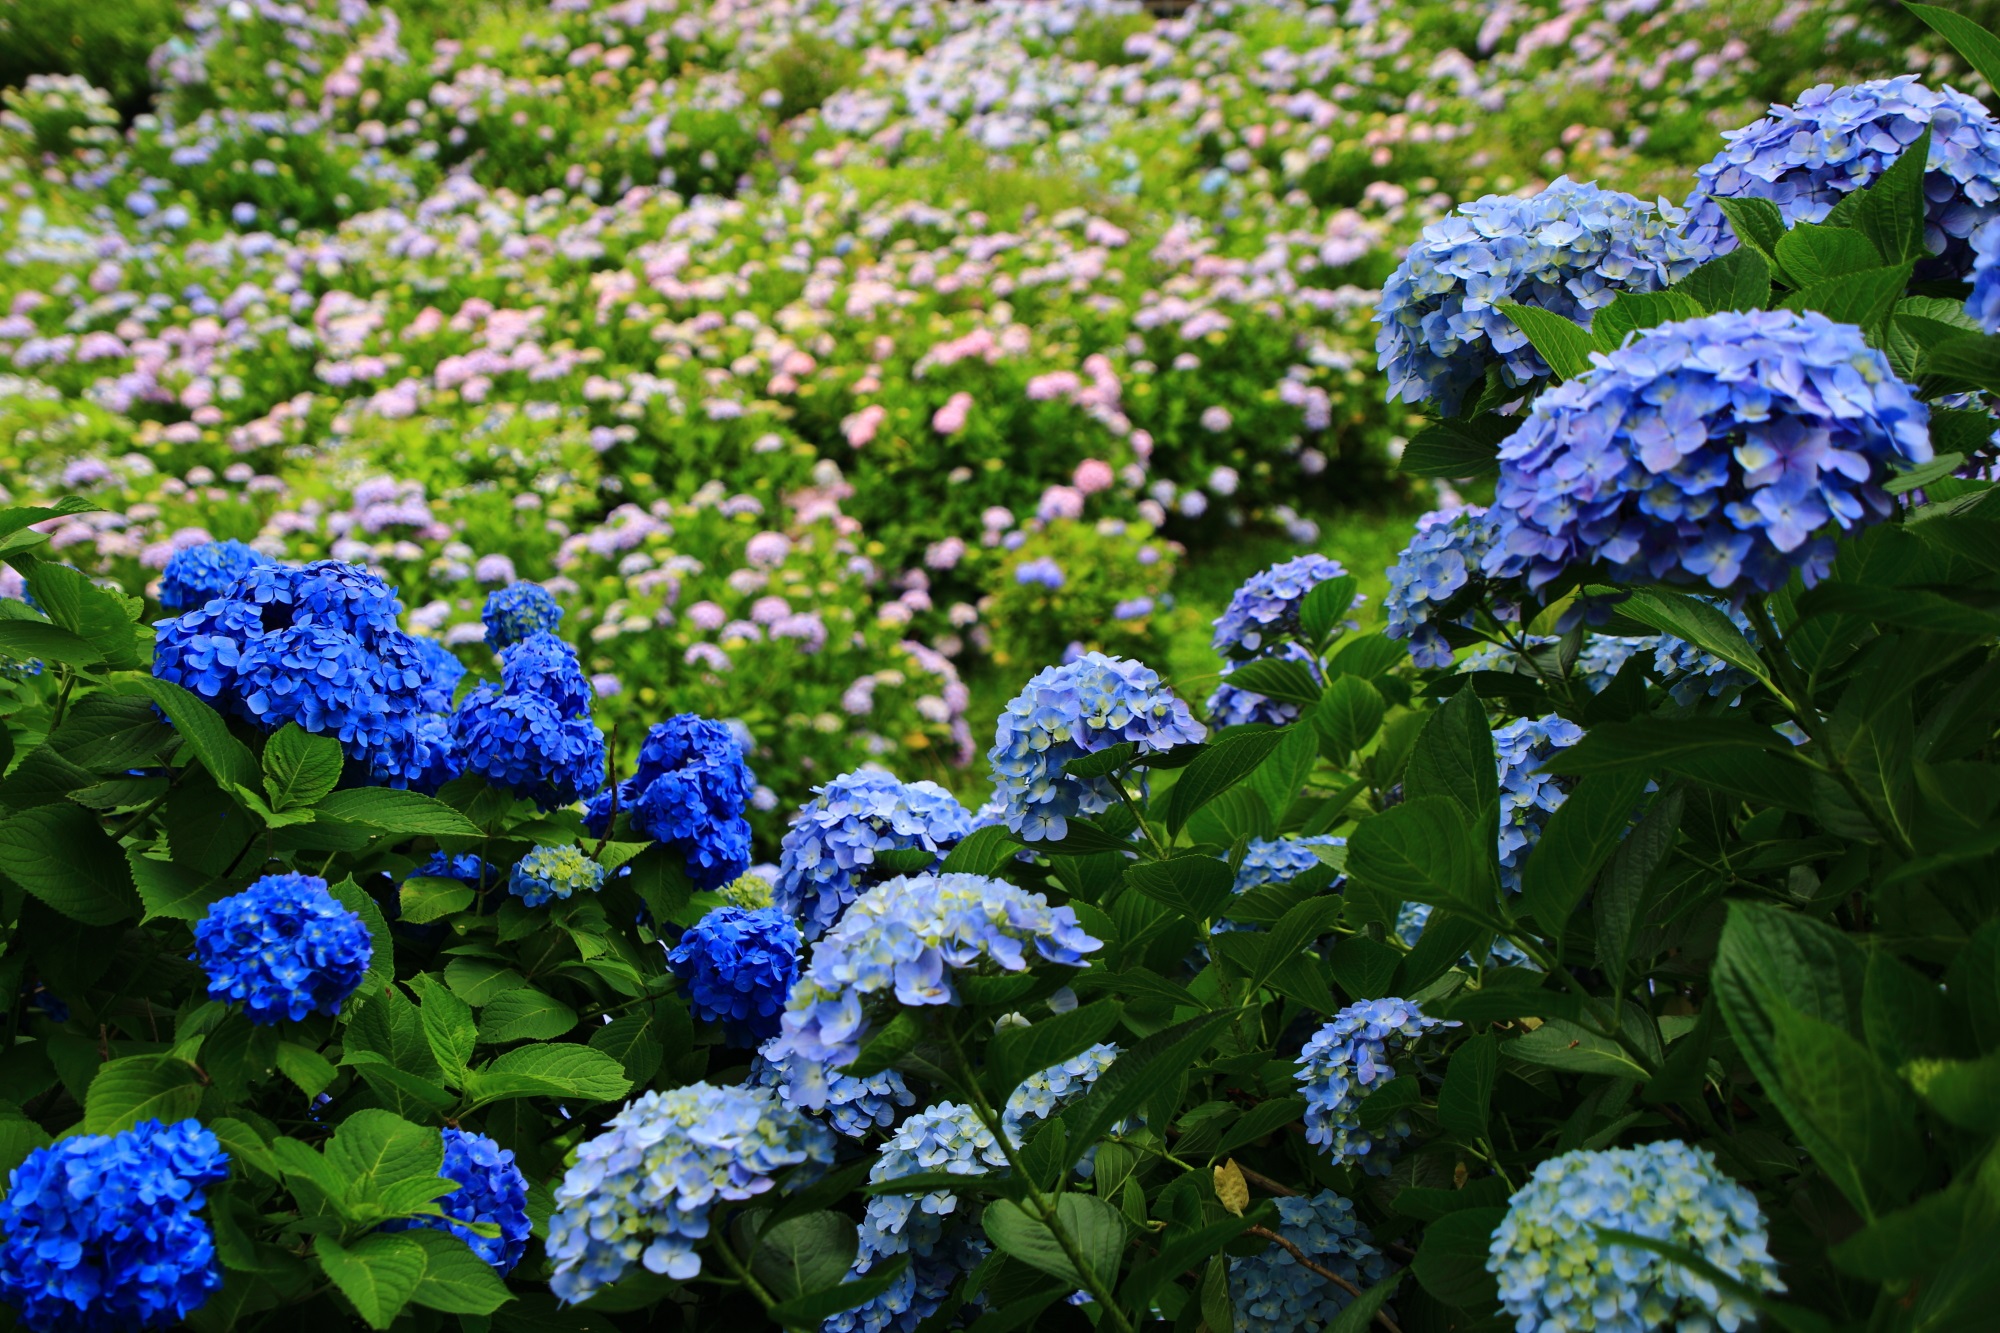 綺麗な鮮やかな青がアクセントになる舞鶴自然文化園のアジサイ園